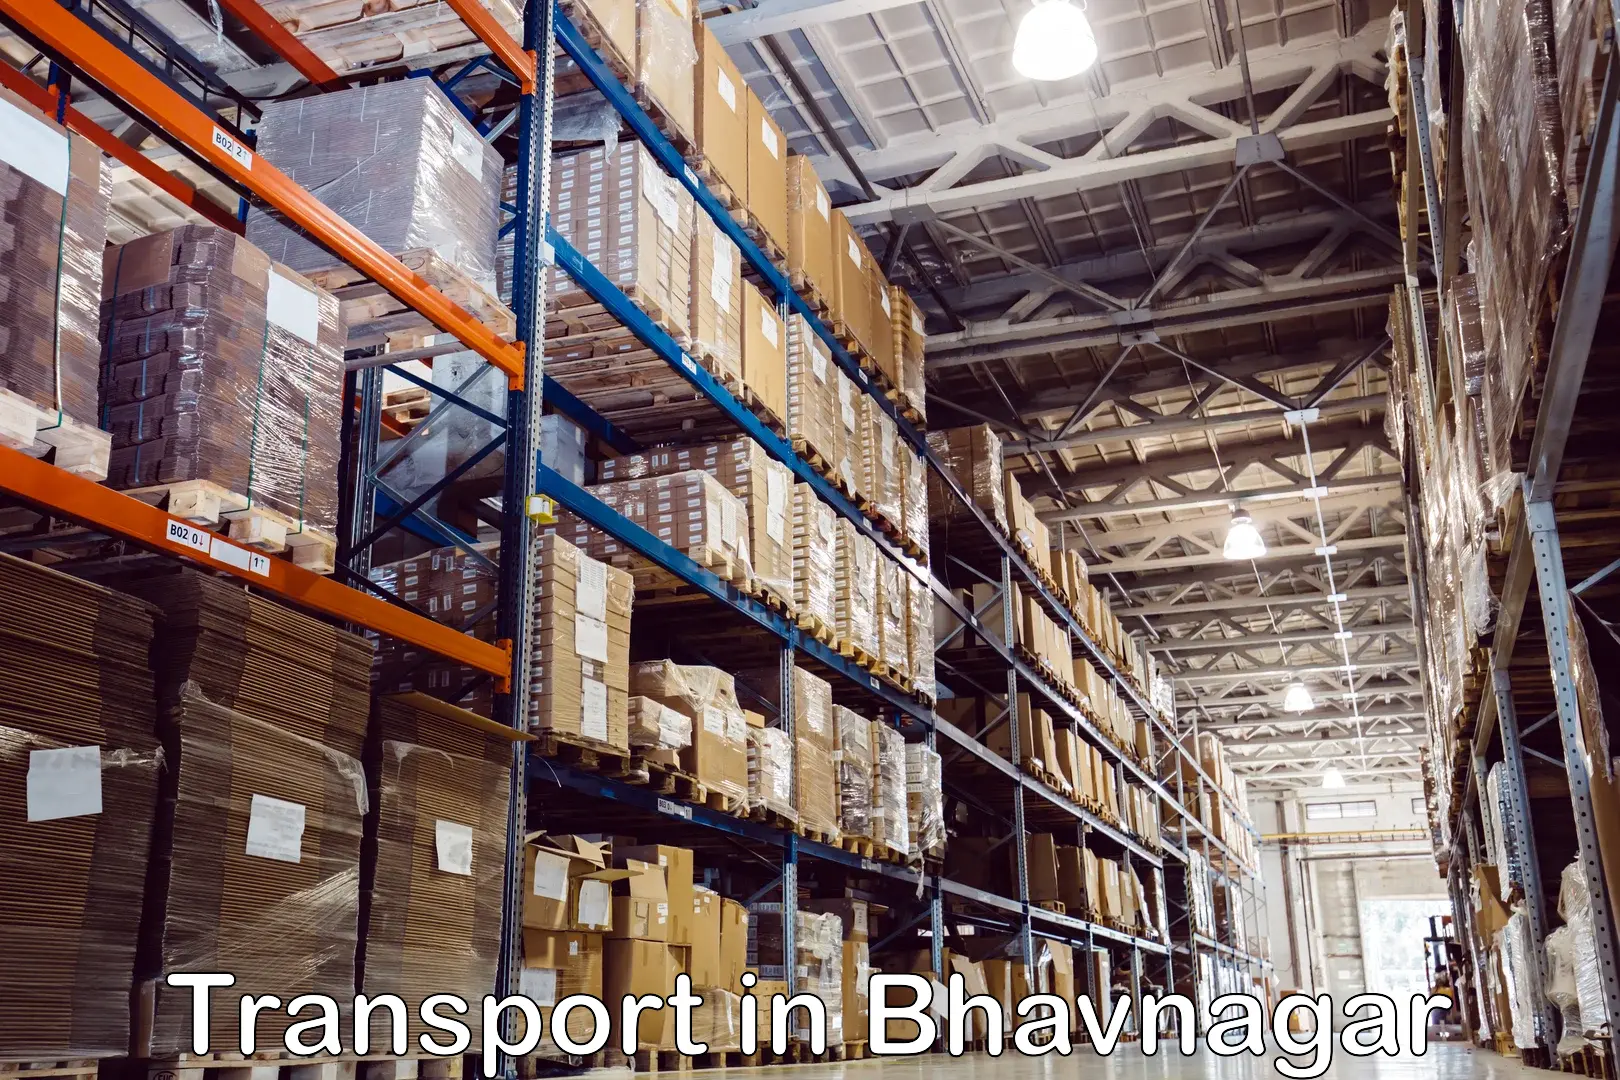 Air cargo transport services in Bhavnagar